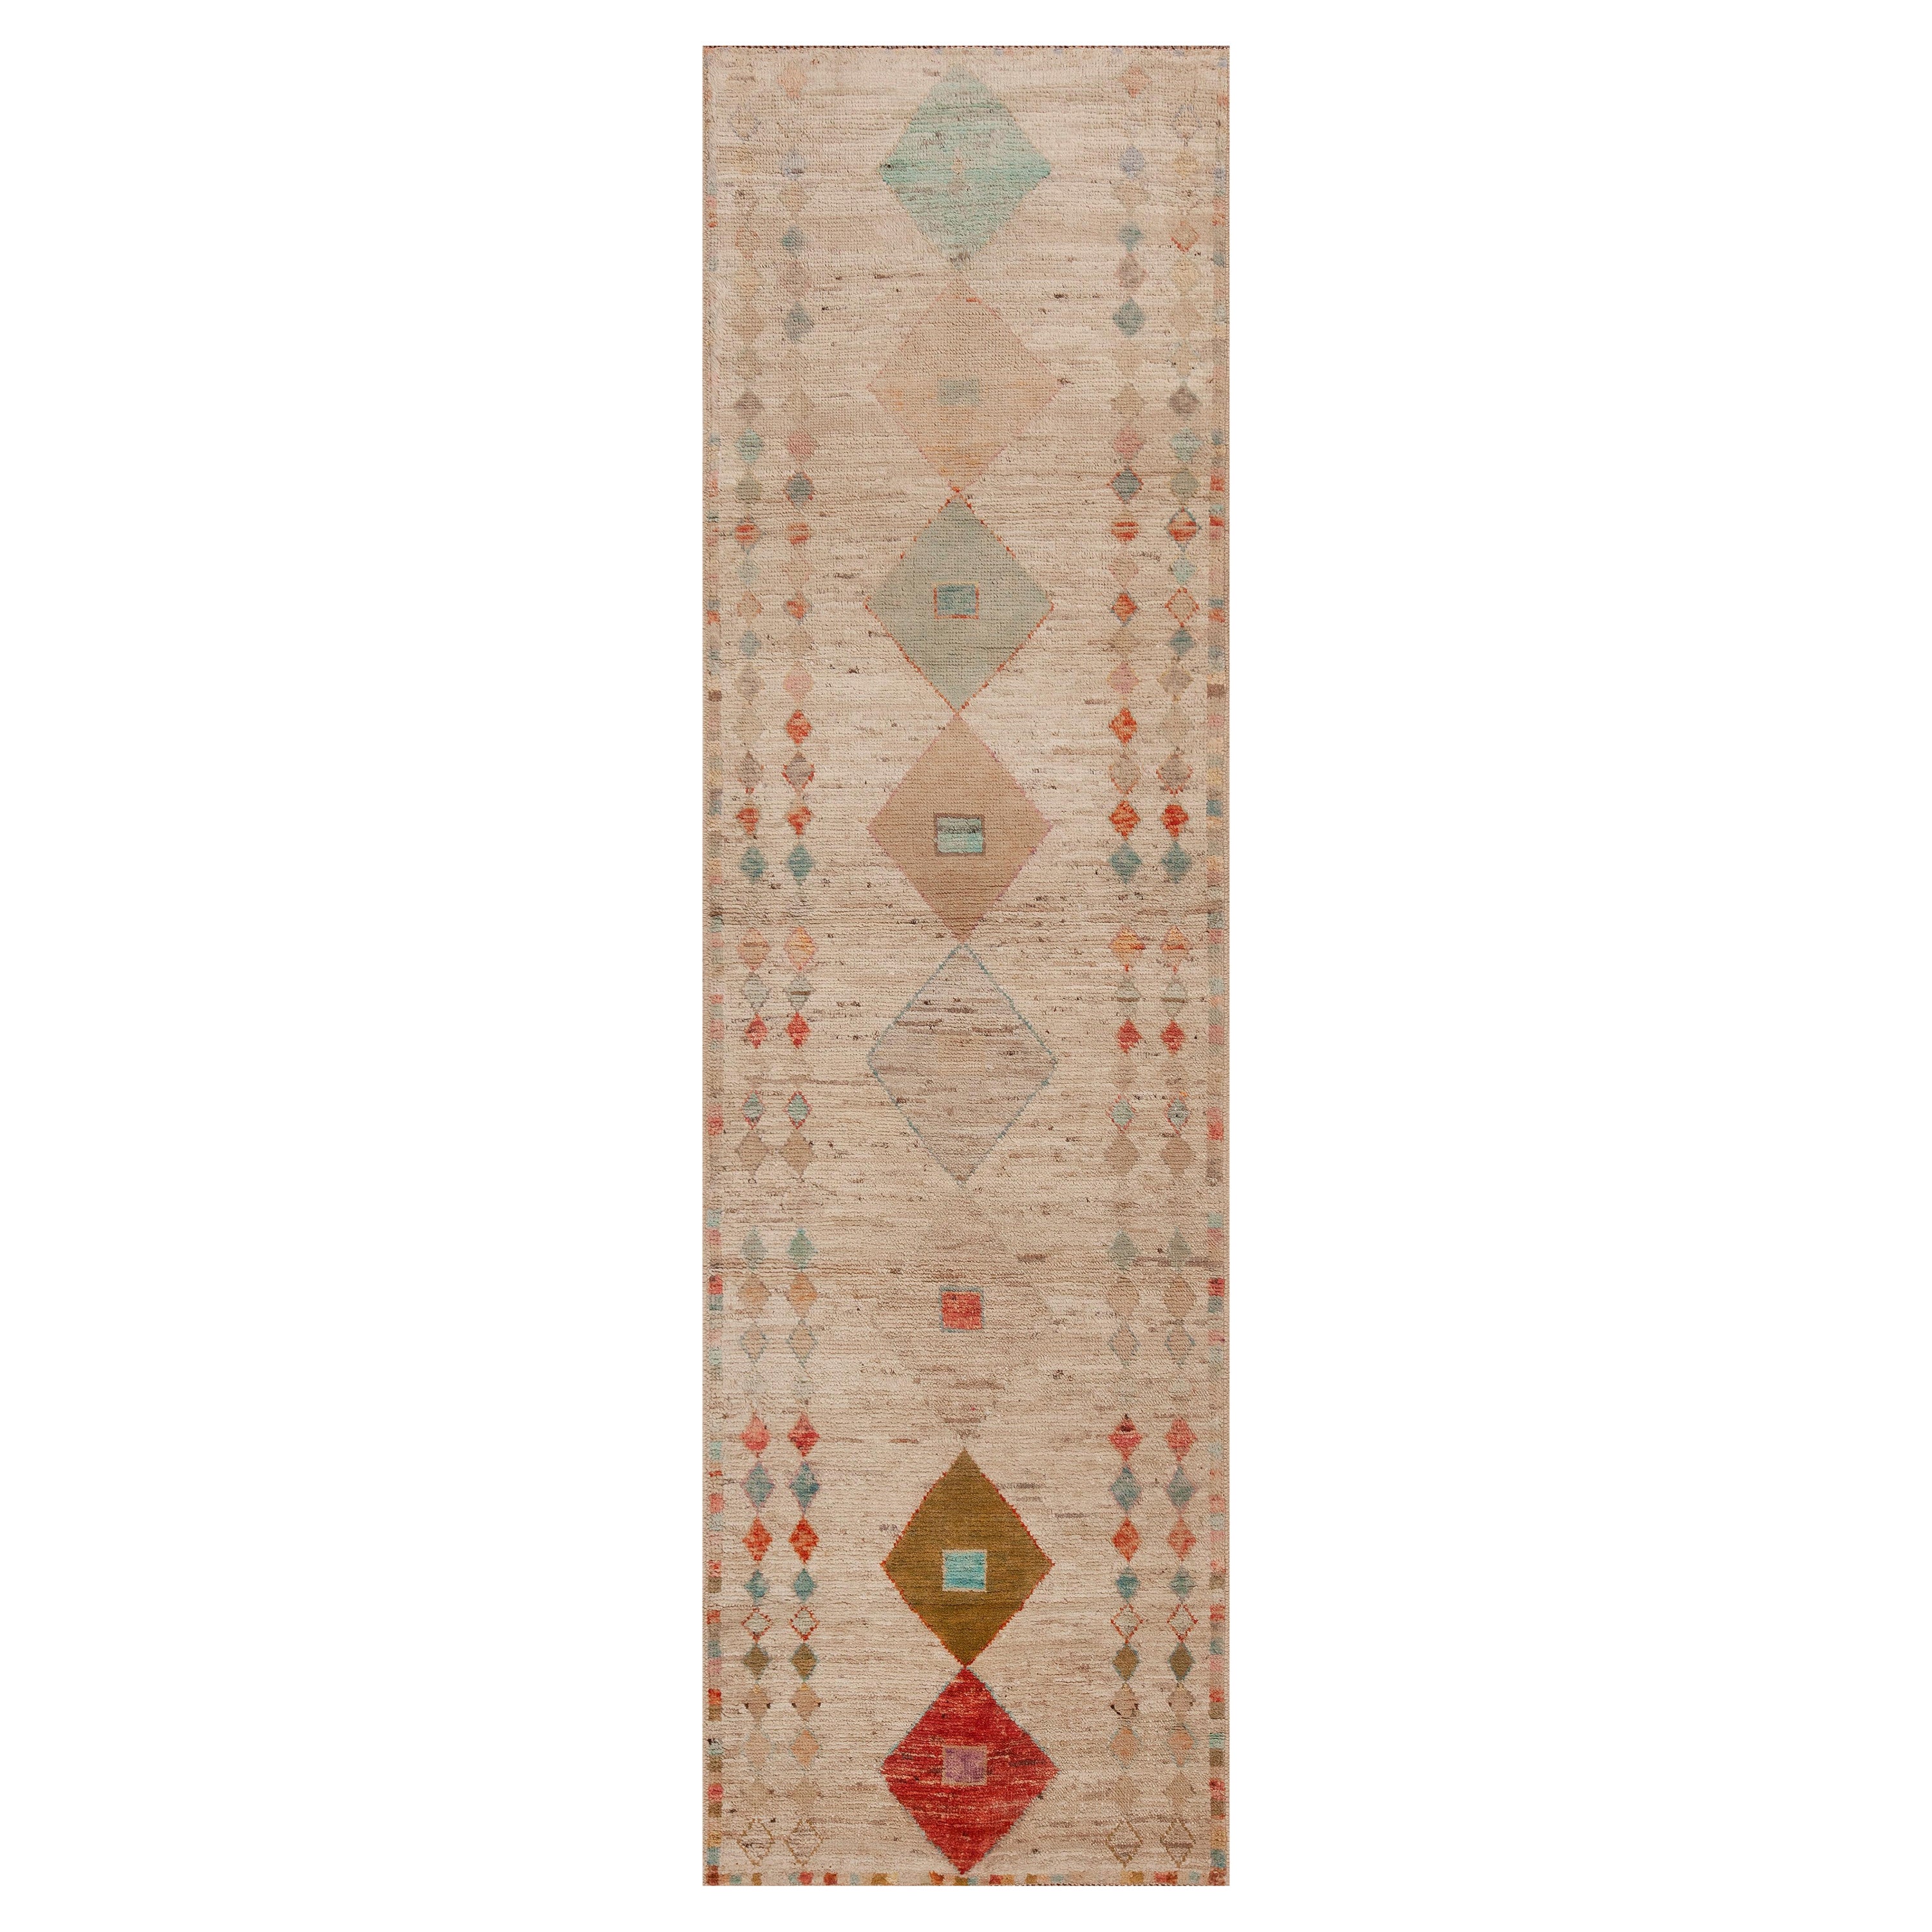 Collection Nazmiyal, tapis de couloir moderne tribal géométrique avec diamants, 2'8" x 9'6"